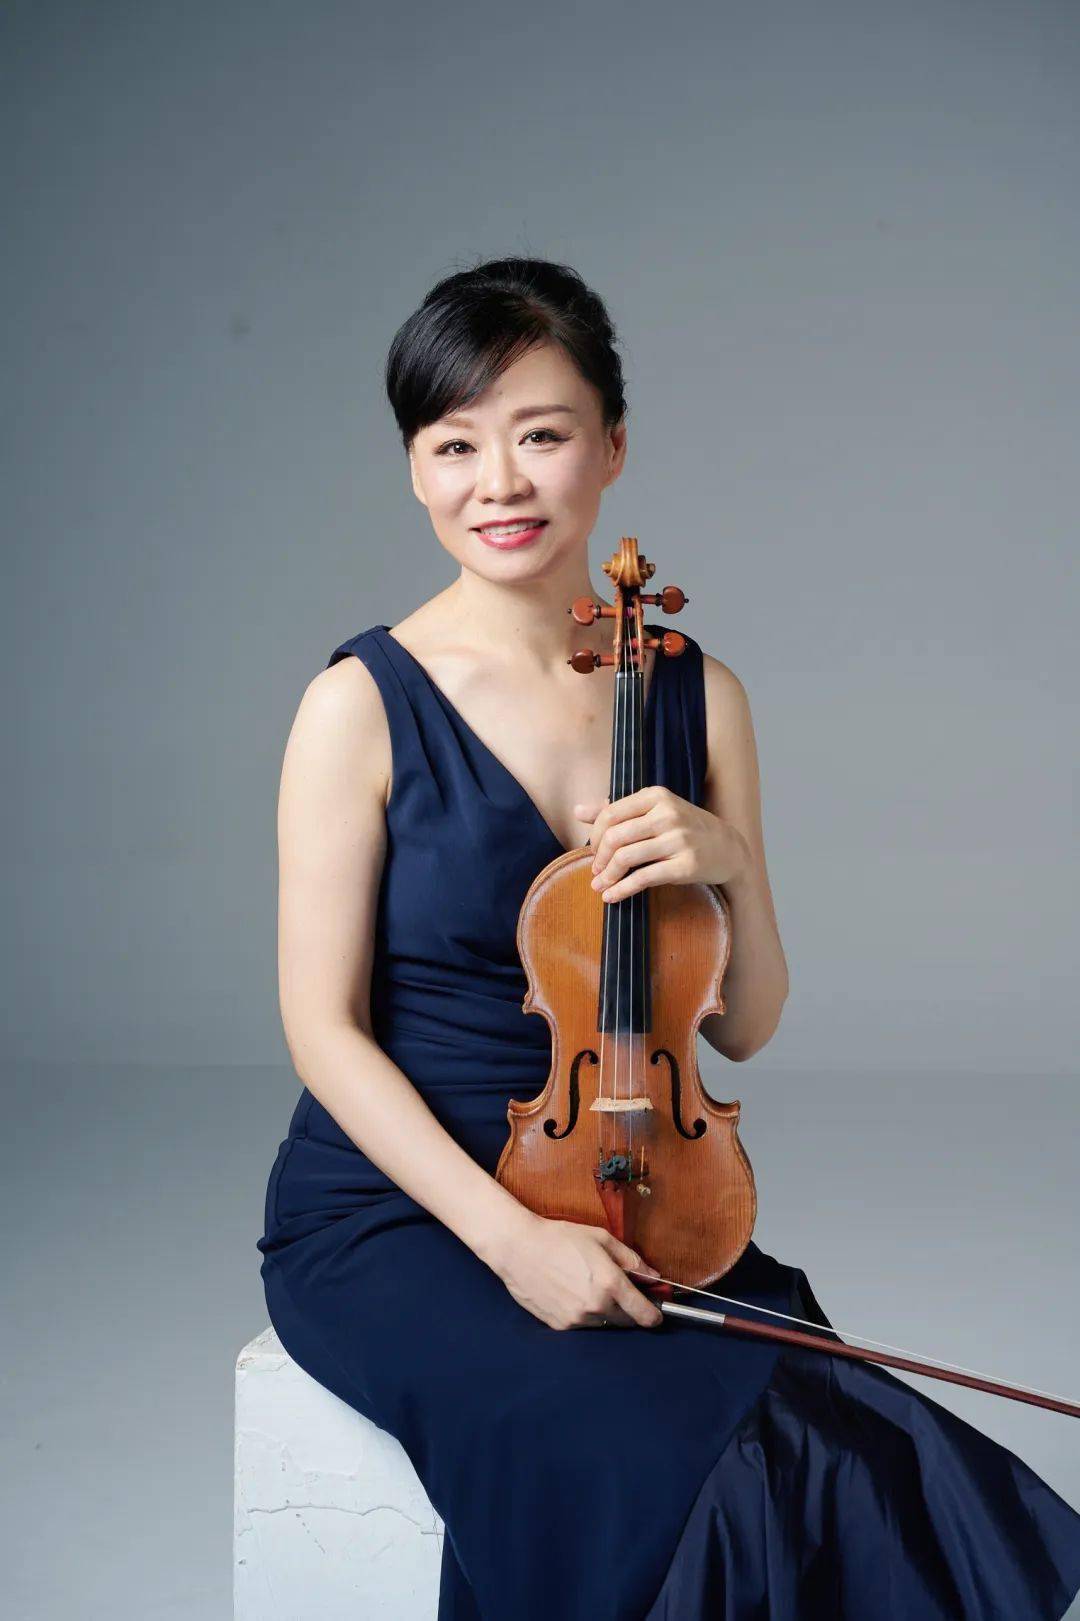 中国女小提琴手排名图片